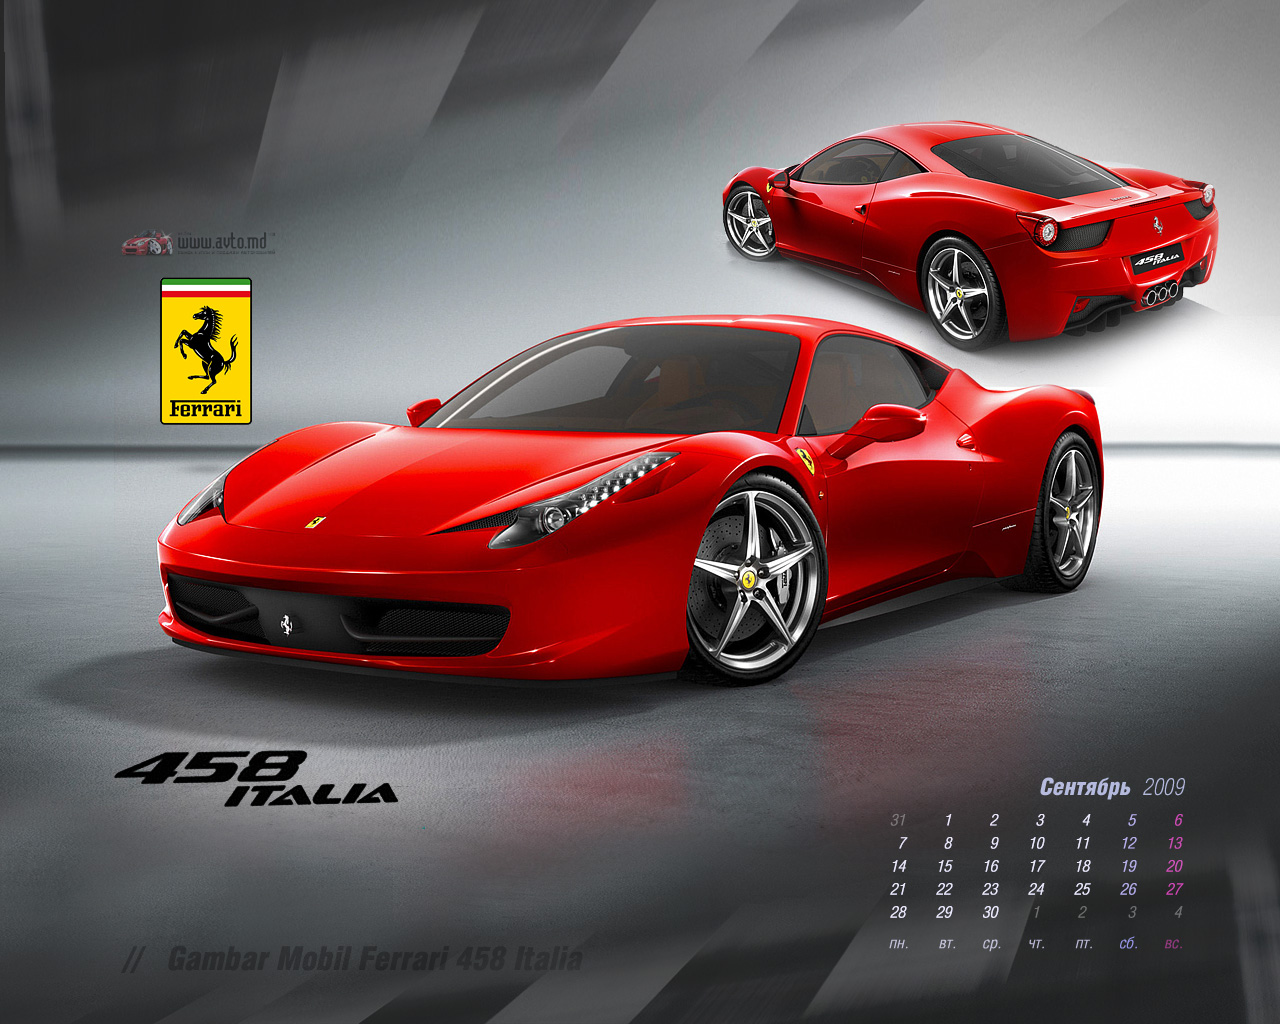 Foto Wallpaper Mobil Ferrari Modifikasi Mobil